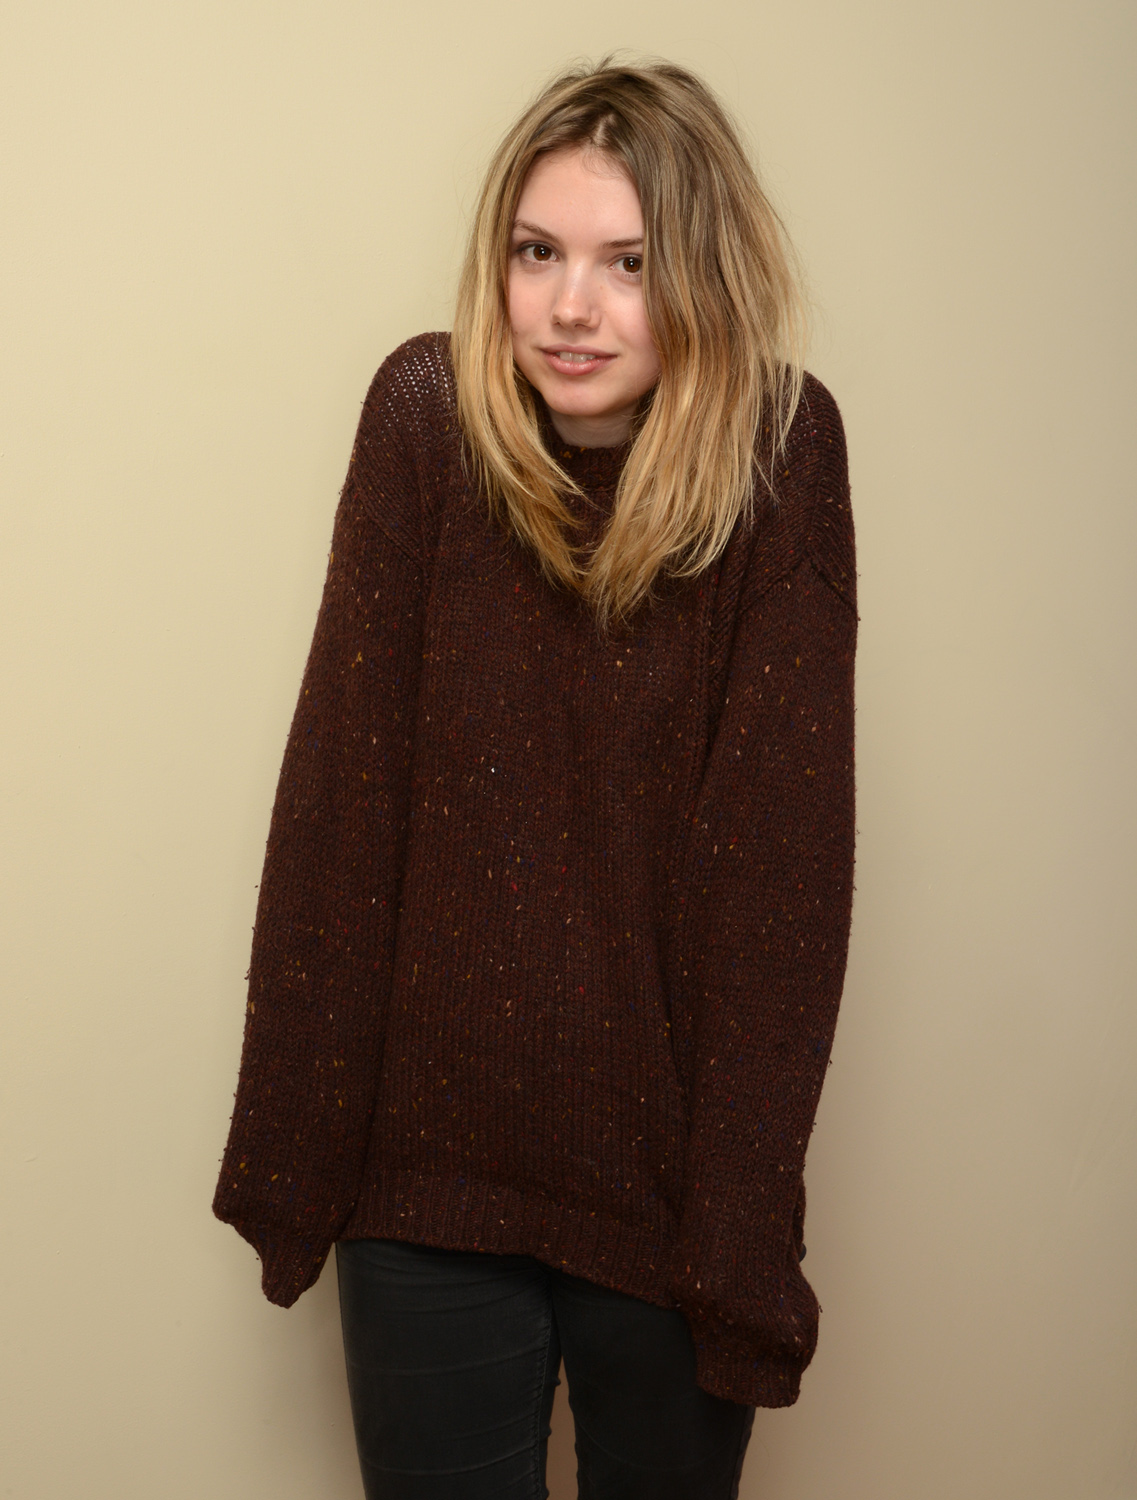 Hannah Murray Women Actress Brunette Long Hair Simple Background Sweater Standing Women Indoors 1137x1500